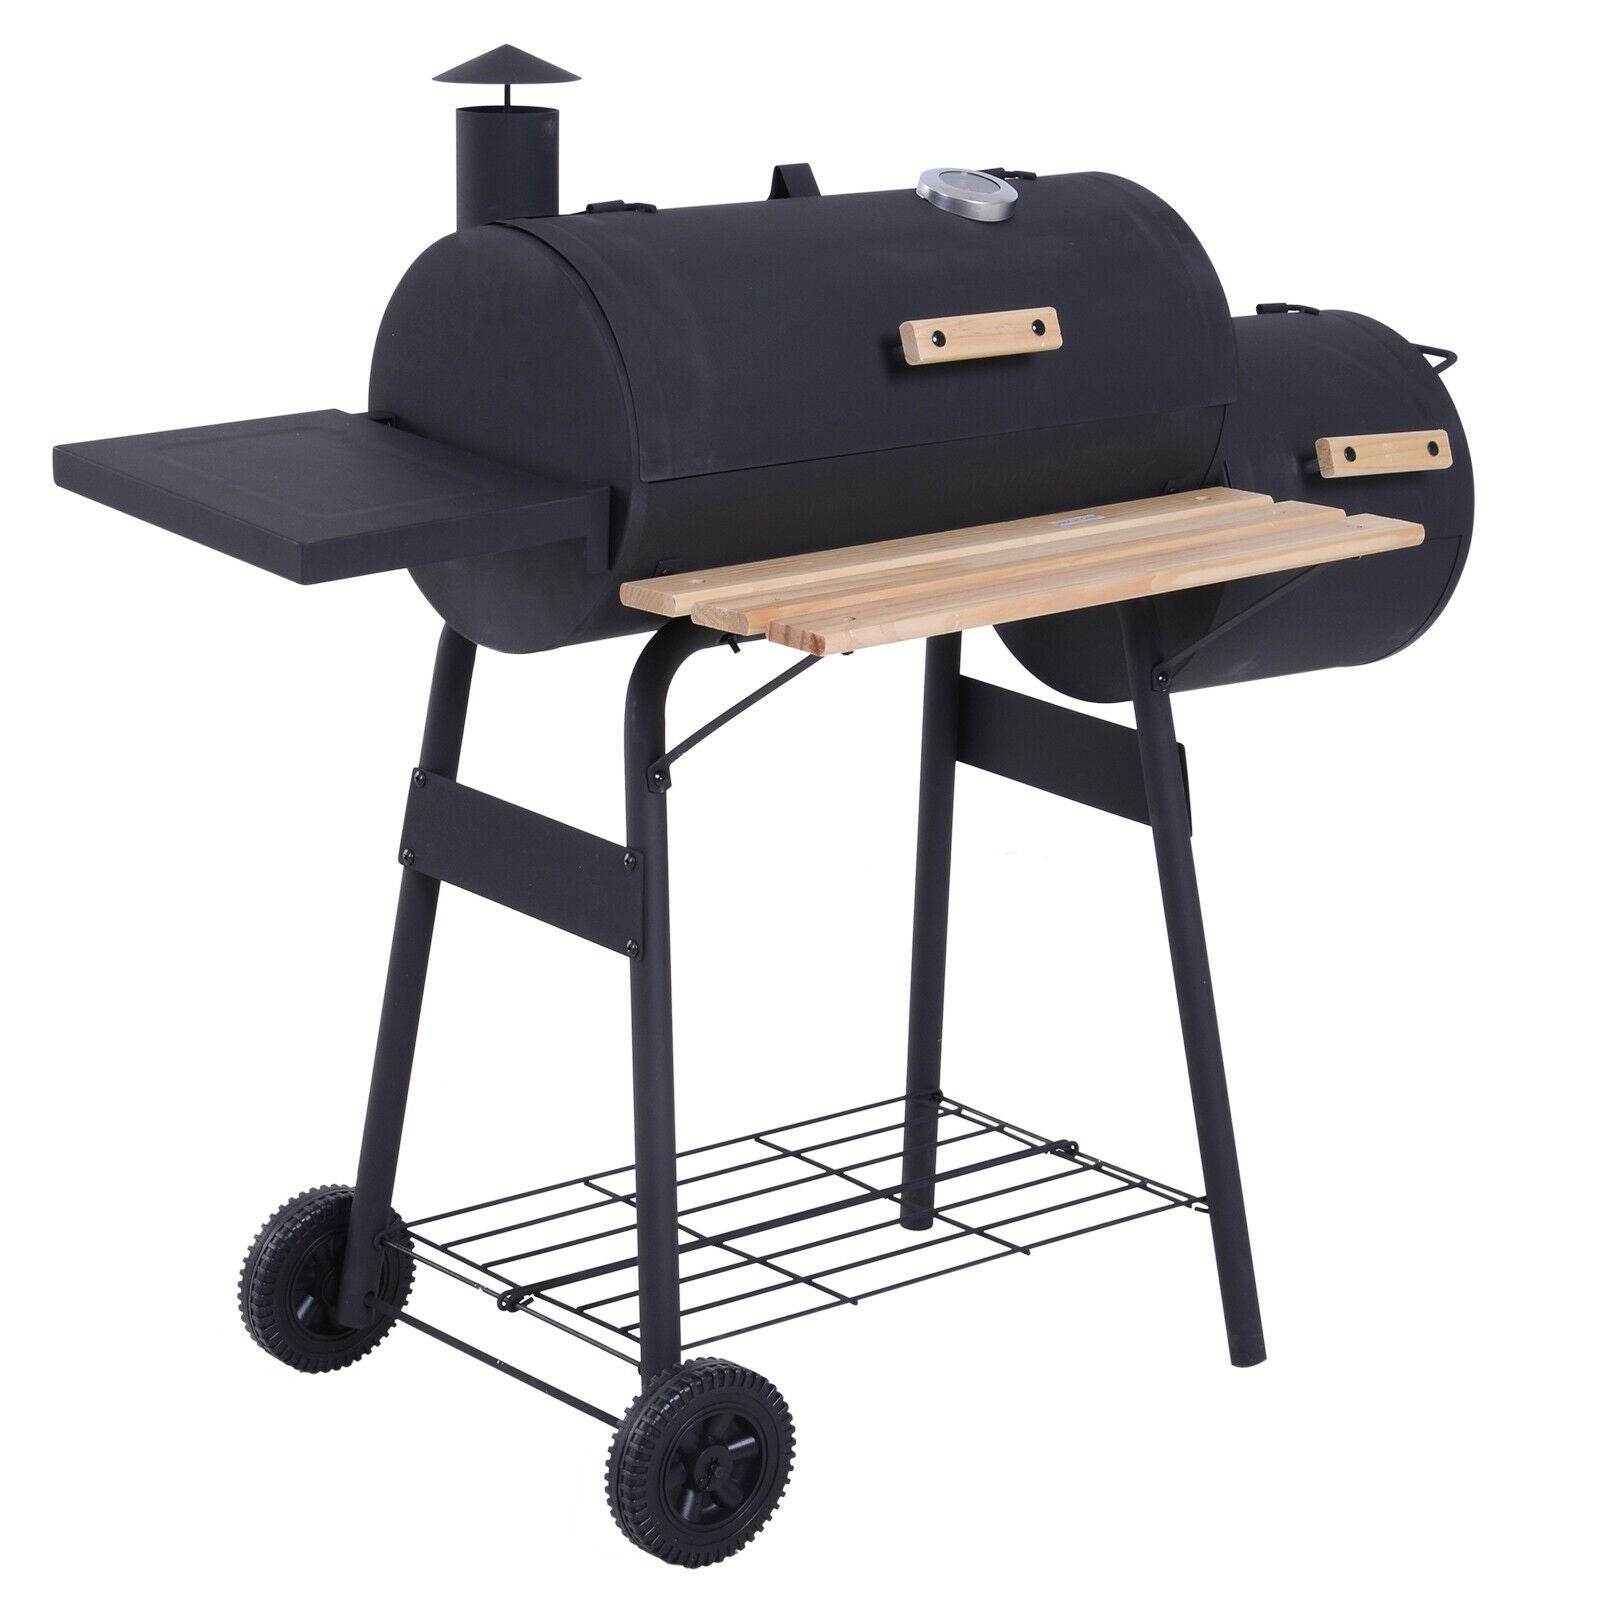 48" Steel Portable Backyard Charcoal BBQ Grill and Offset Smoker Combo Backyard - 352576612882-Quality Home Distribution